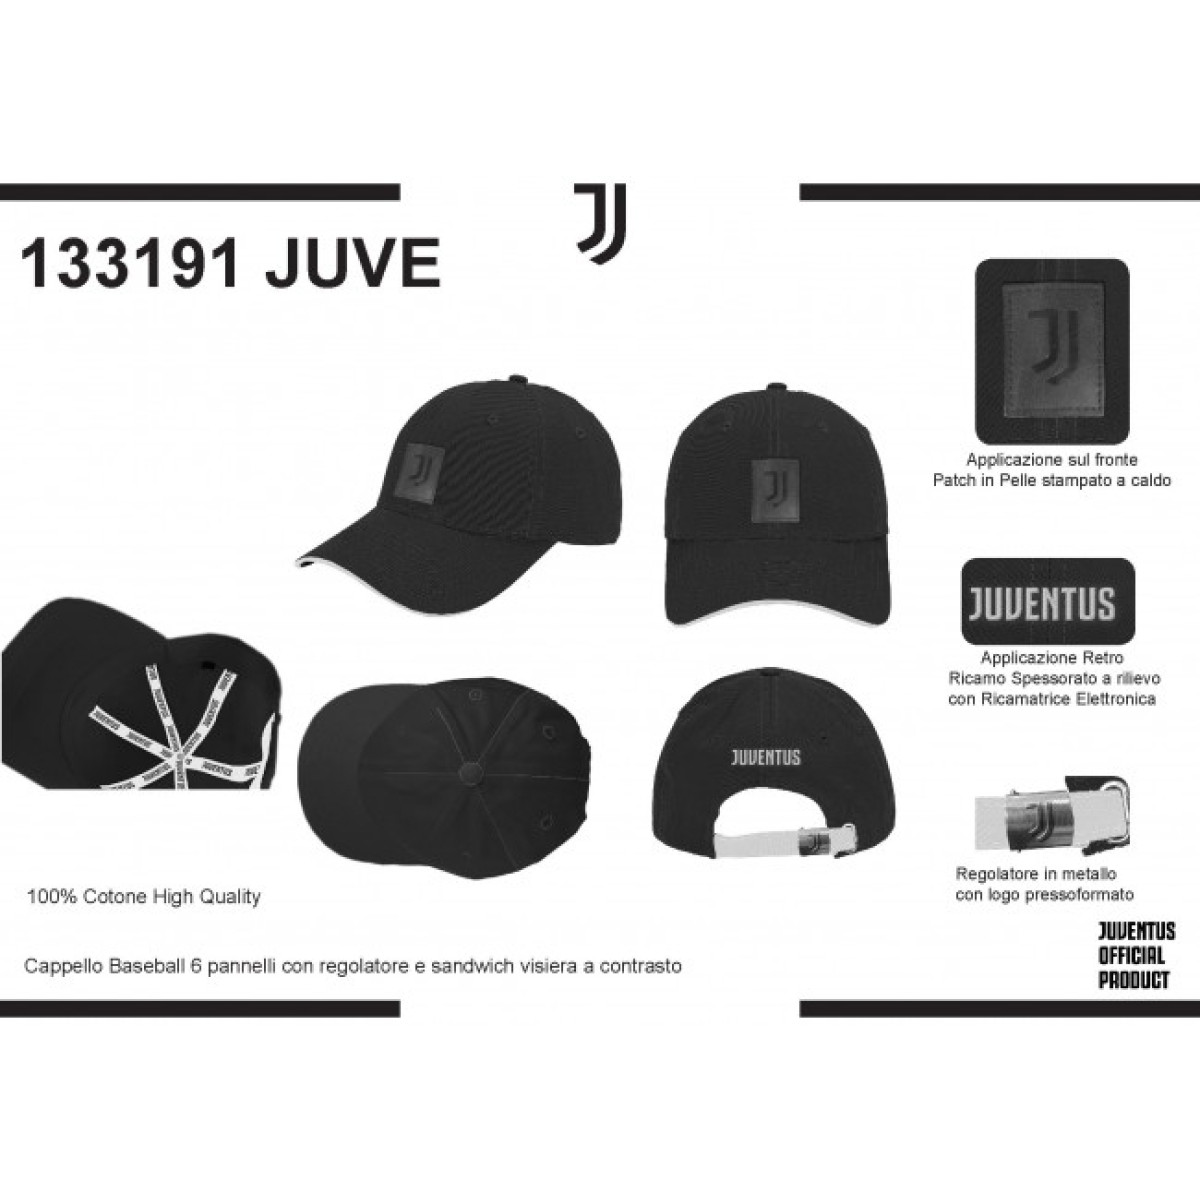 JUVENTUS BERRETTO - Juventus Official Online Store